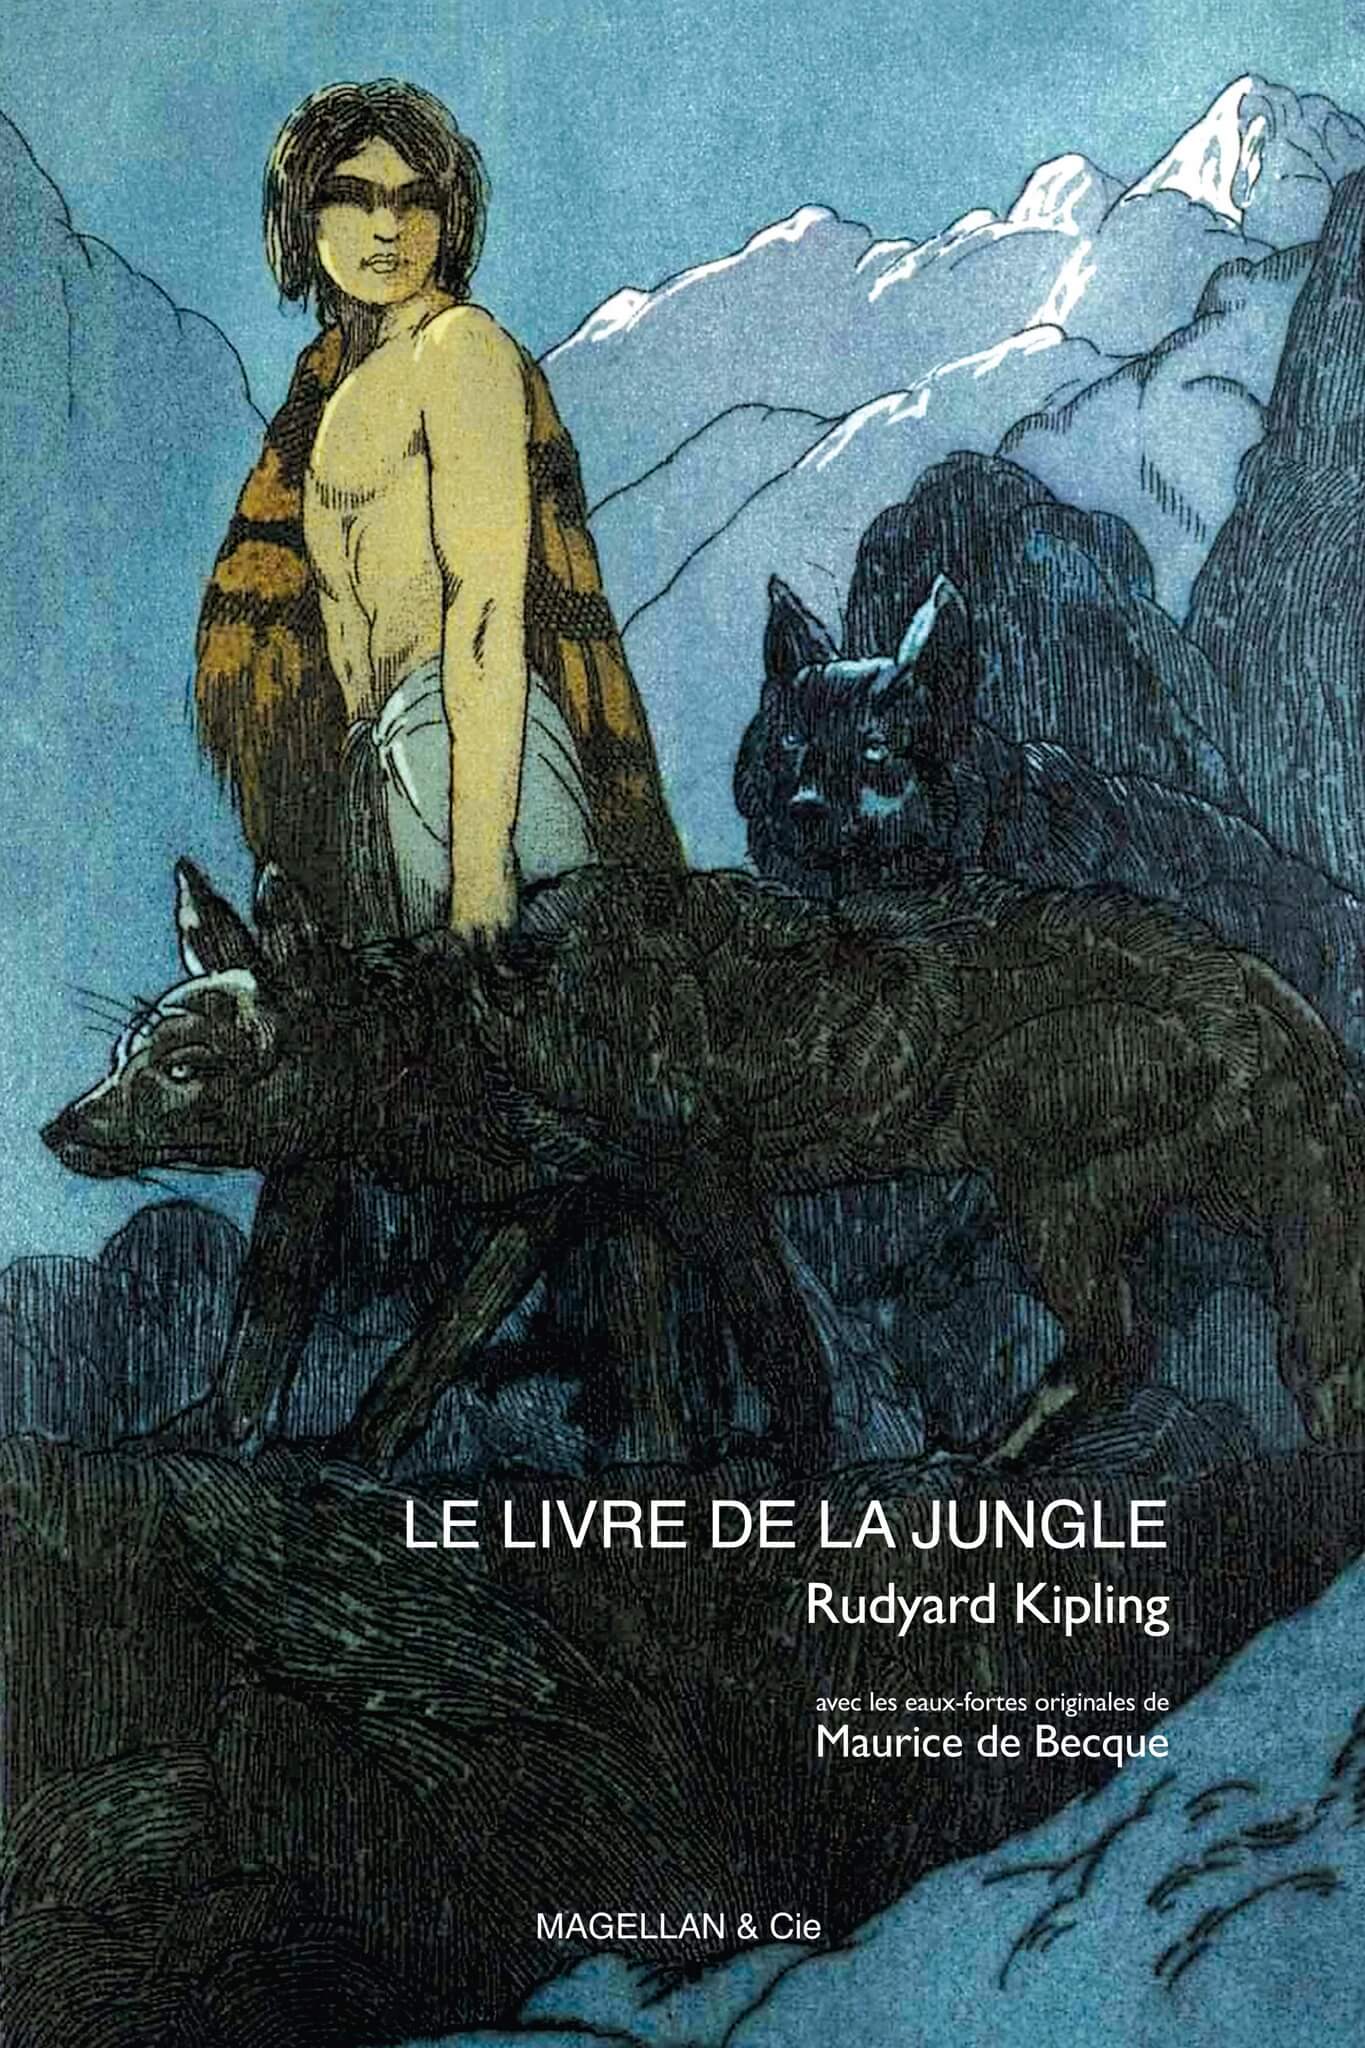 La faim du loup - Albums Les P'tits Magellan, Jeunesse - Éditions